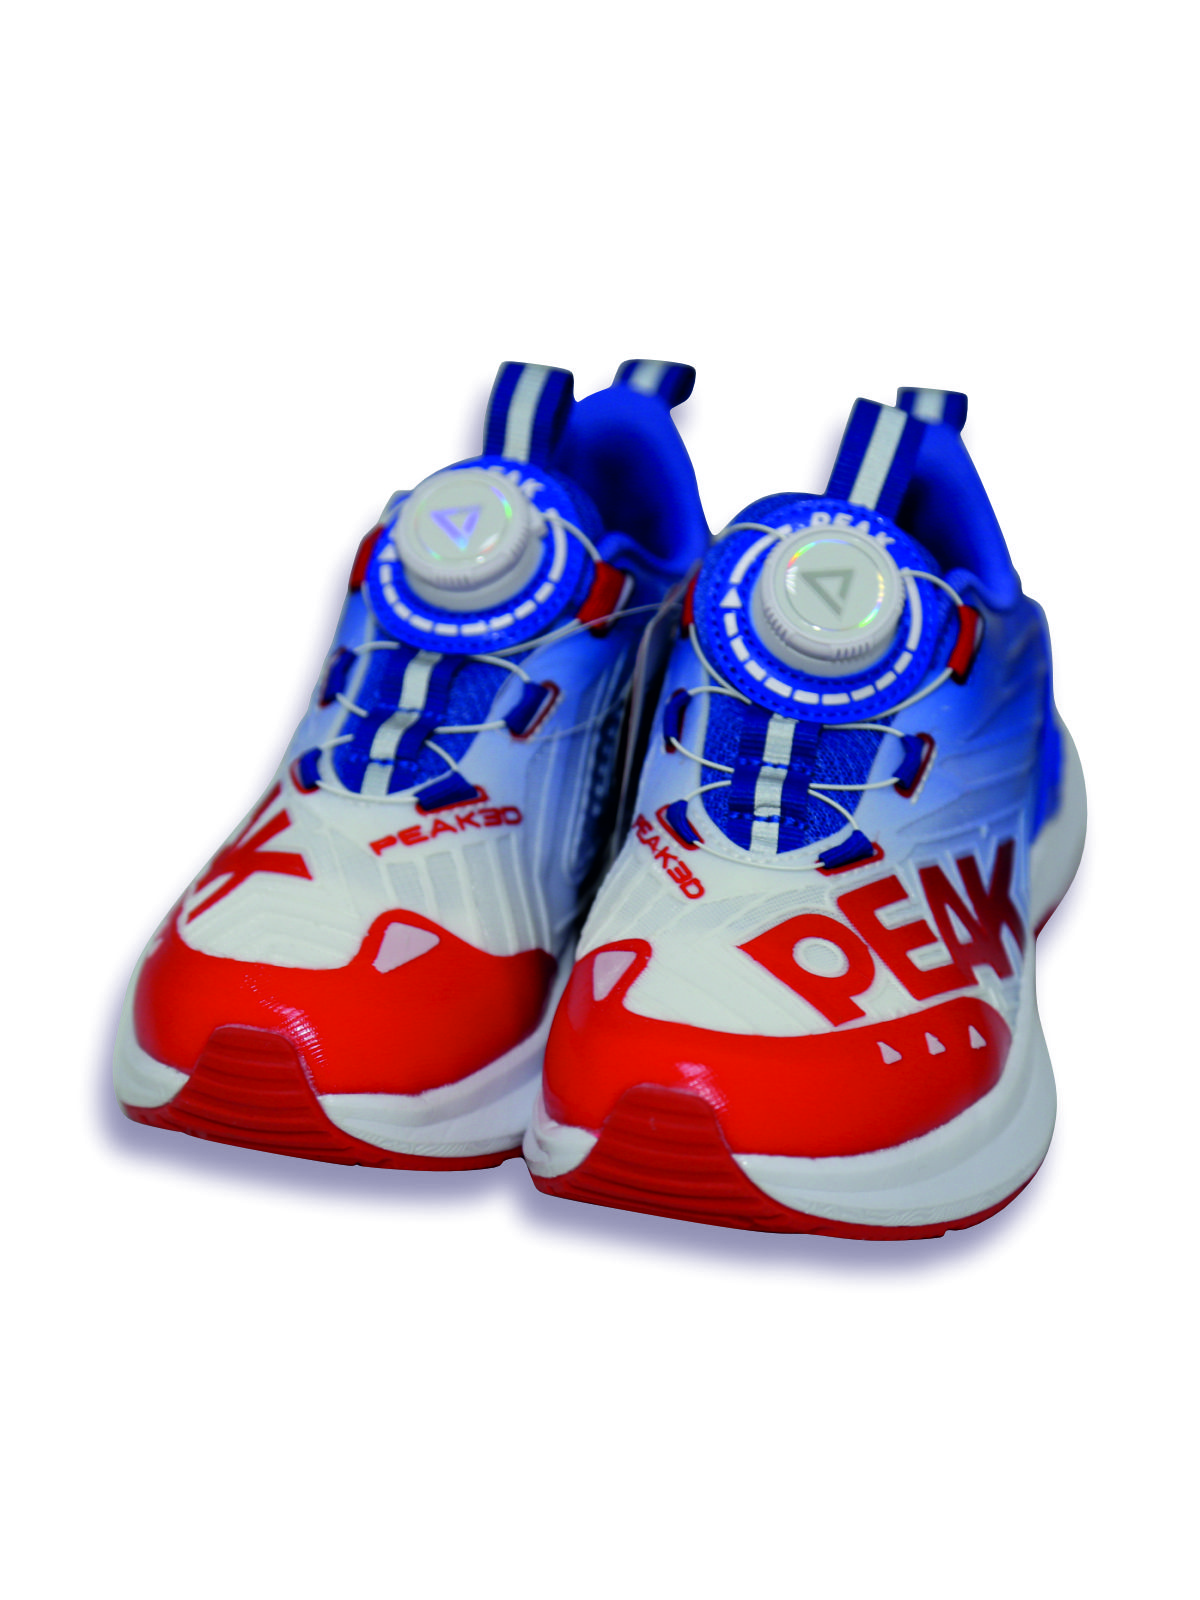 Кроссовки детские PEAK E23, красно-сине-белый, 38 кроссовки детские peak e23 красно сине белый 35